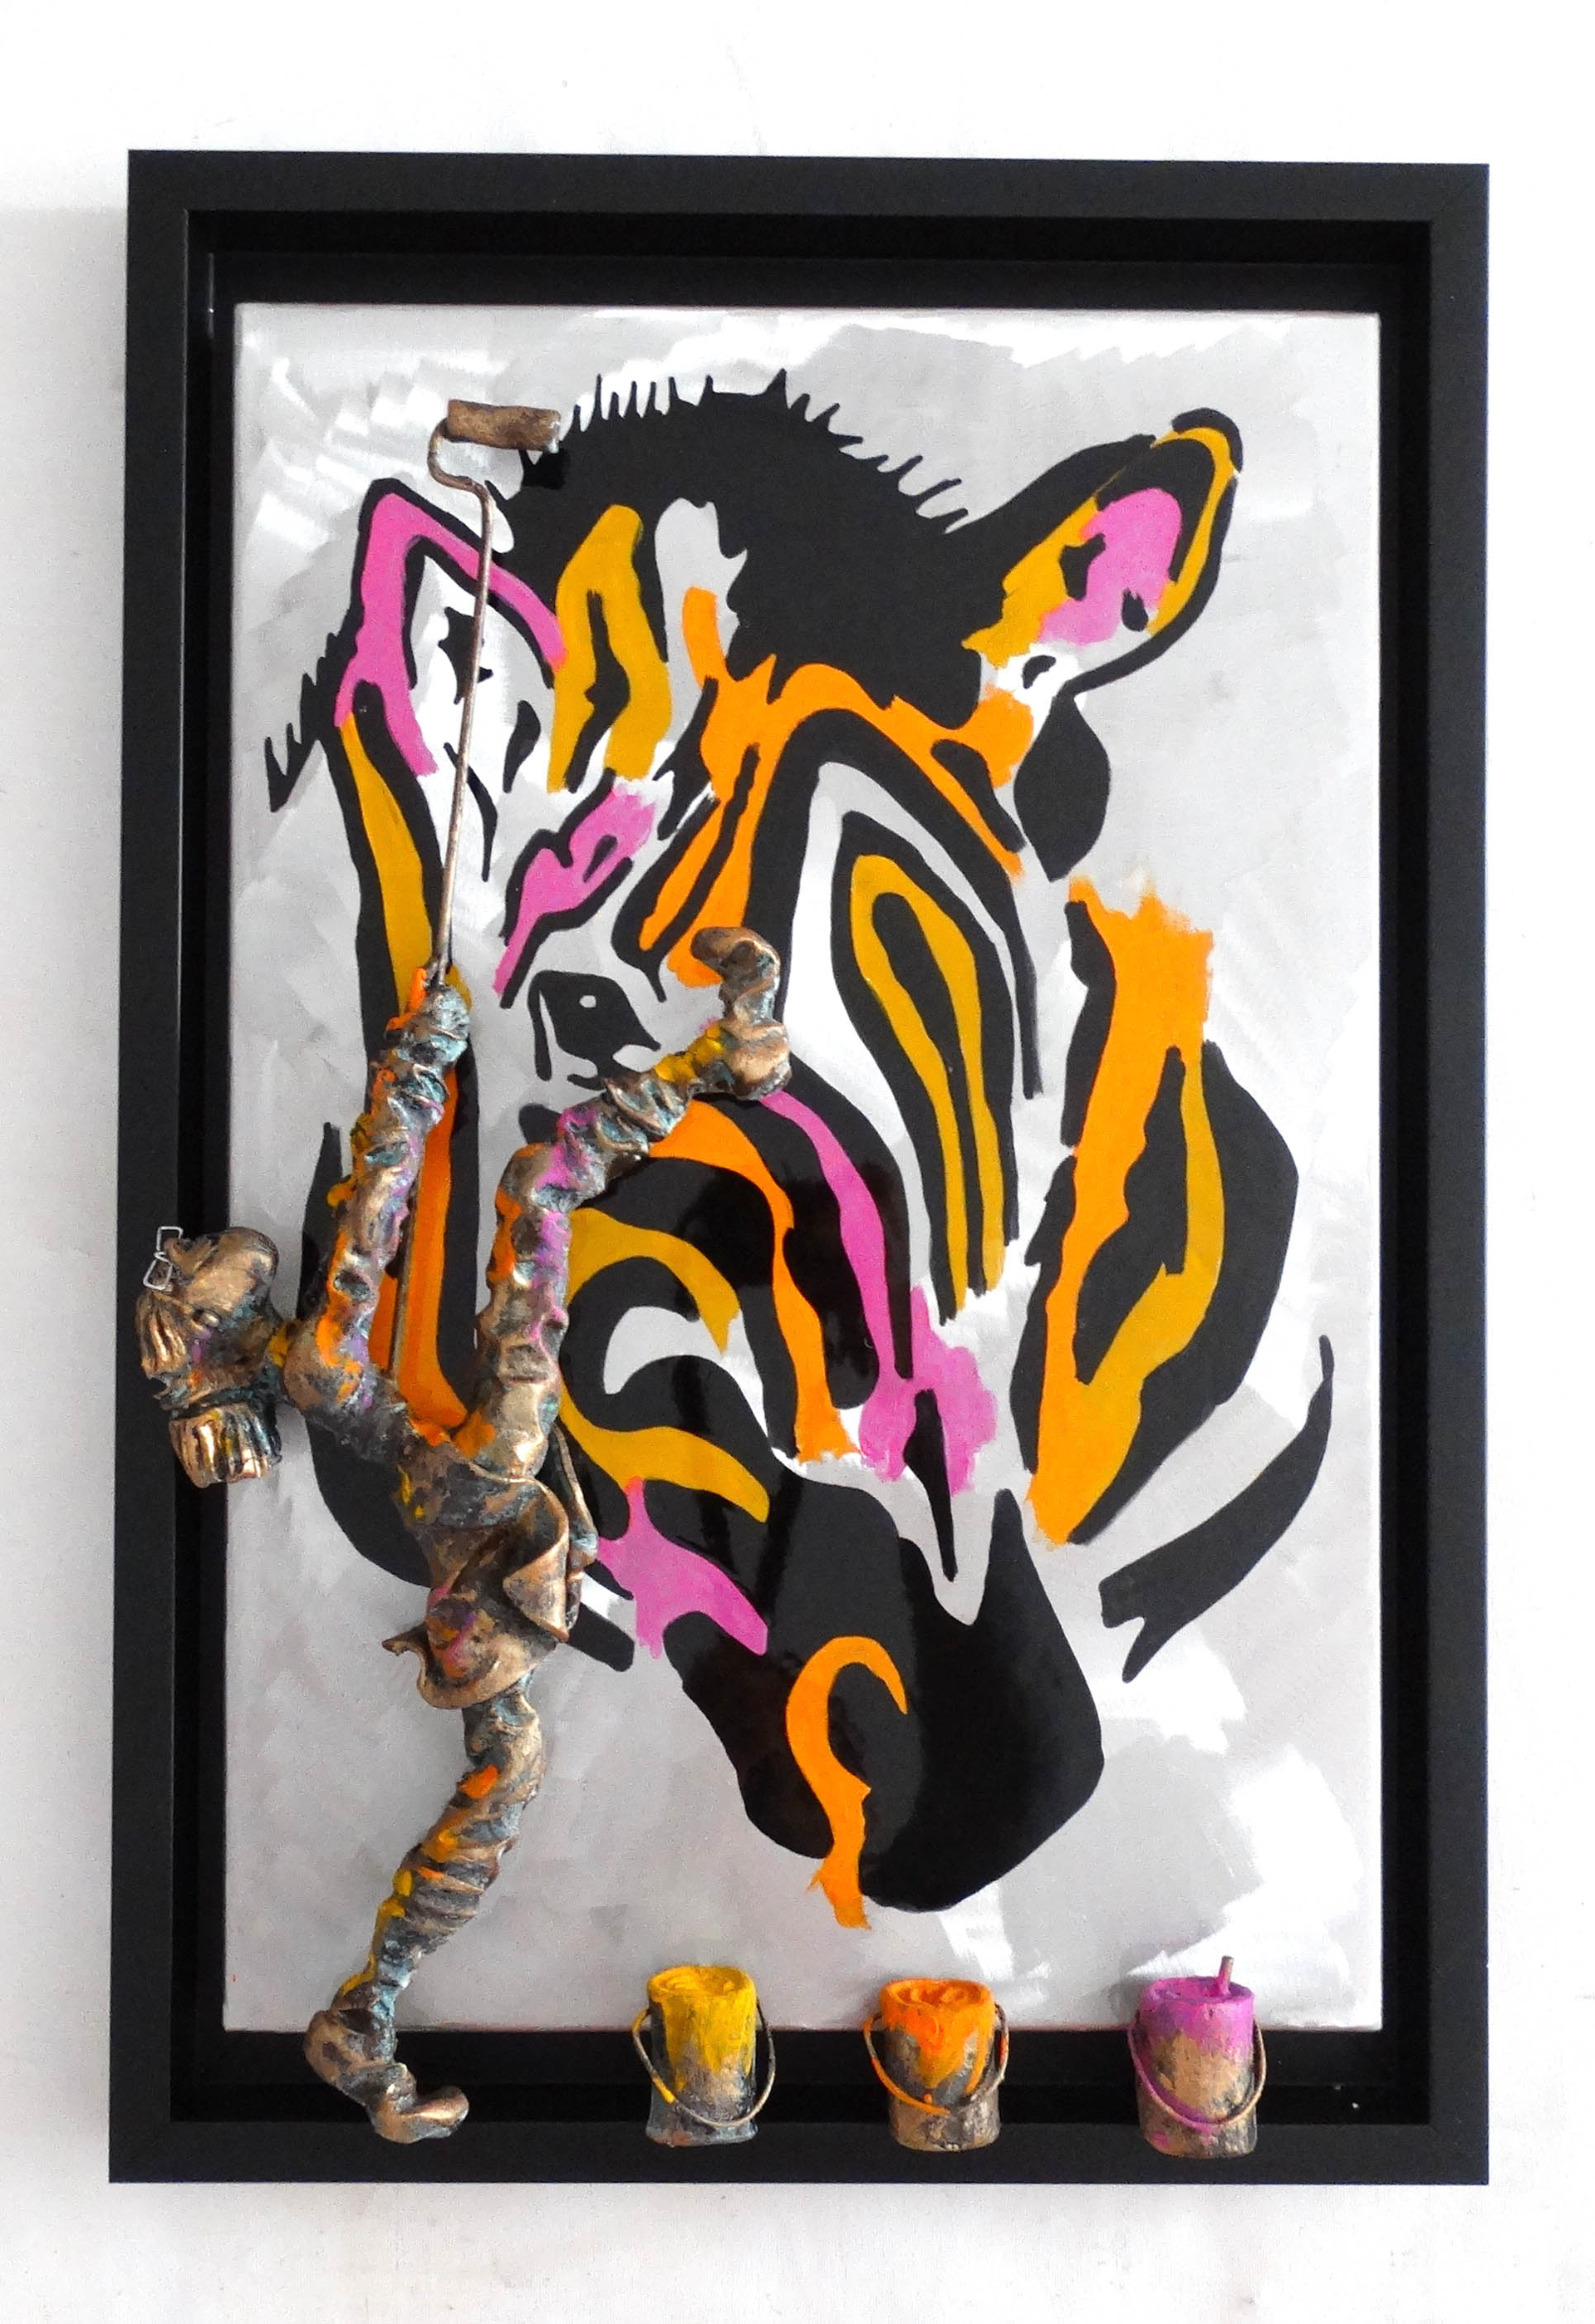 Colored Zebra by Bernard Saint-Maxent